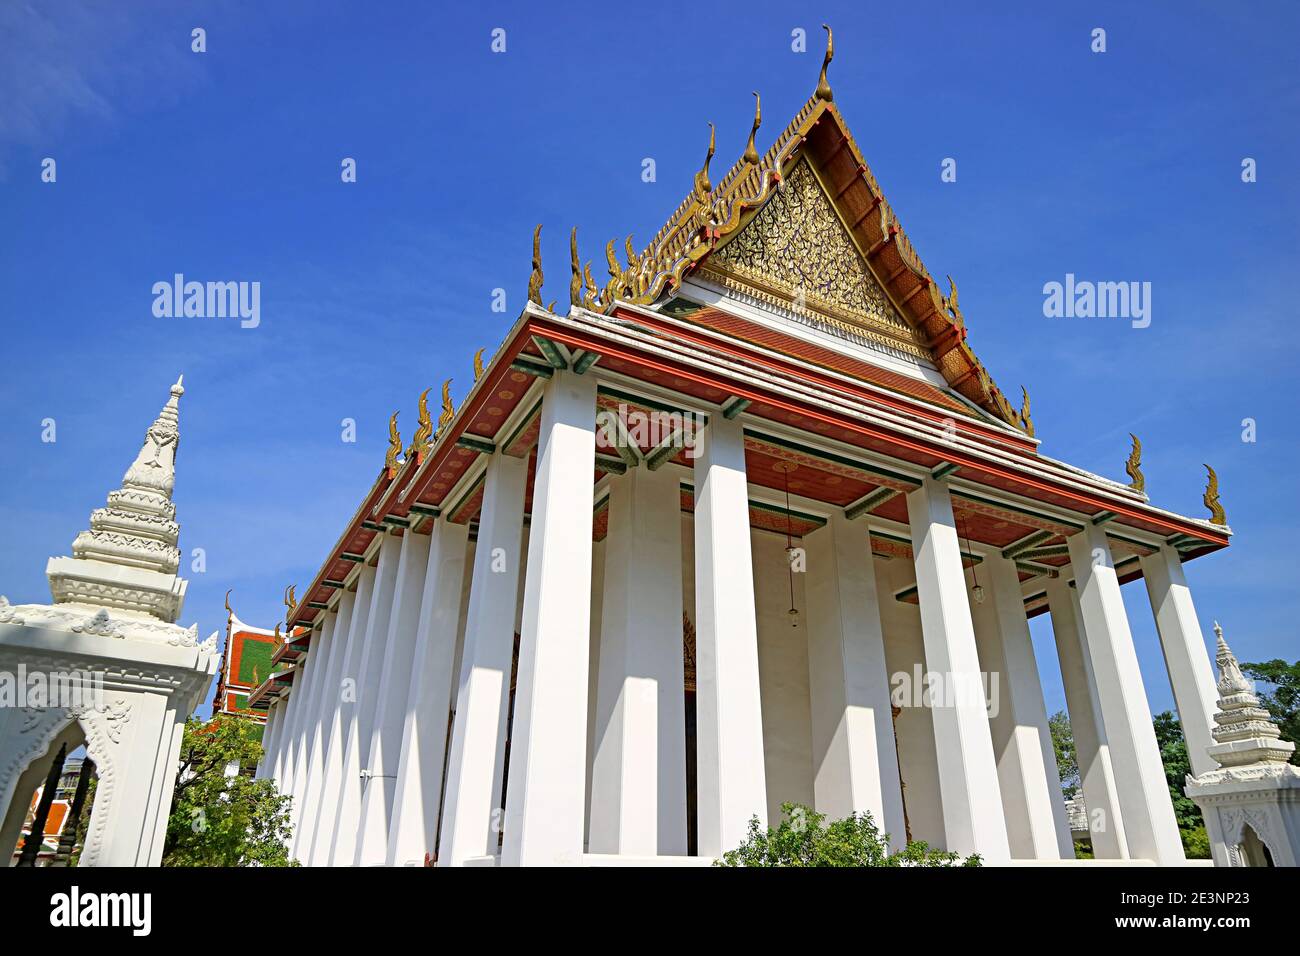 Magnifique façade de la salle ordinaire du temple Wat Ratchanatdaram situé sur l'île Rattanakosin de Bangkok, Thaïlande Banque D'Images